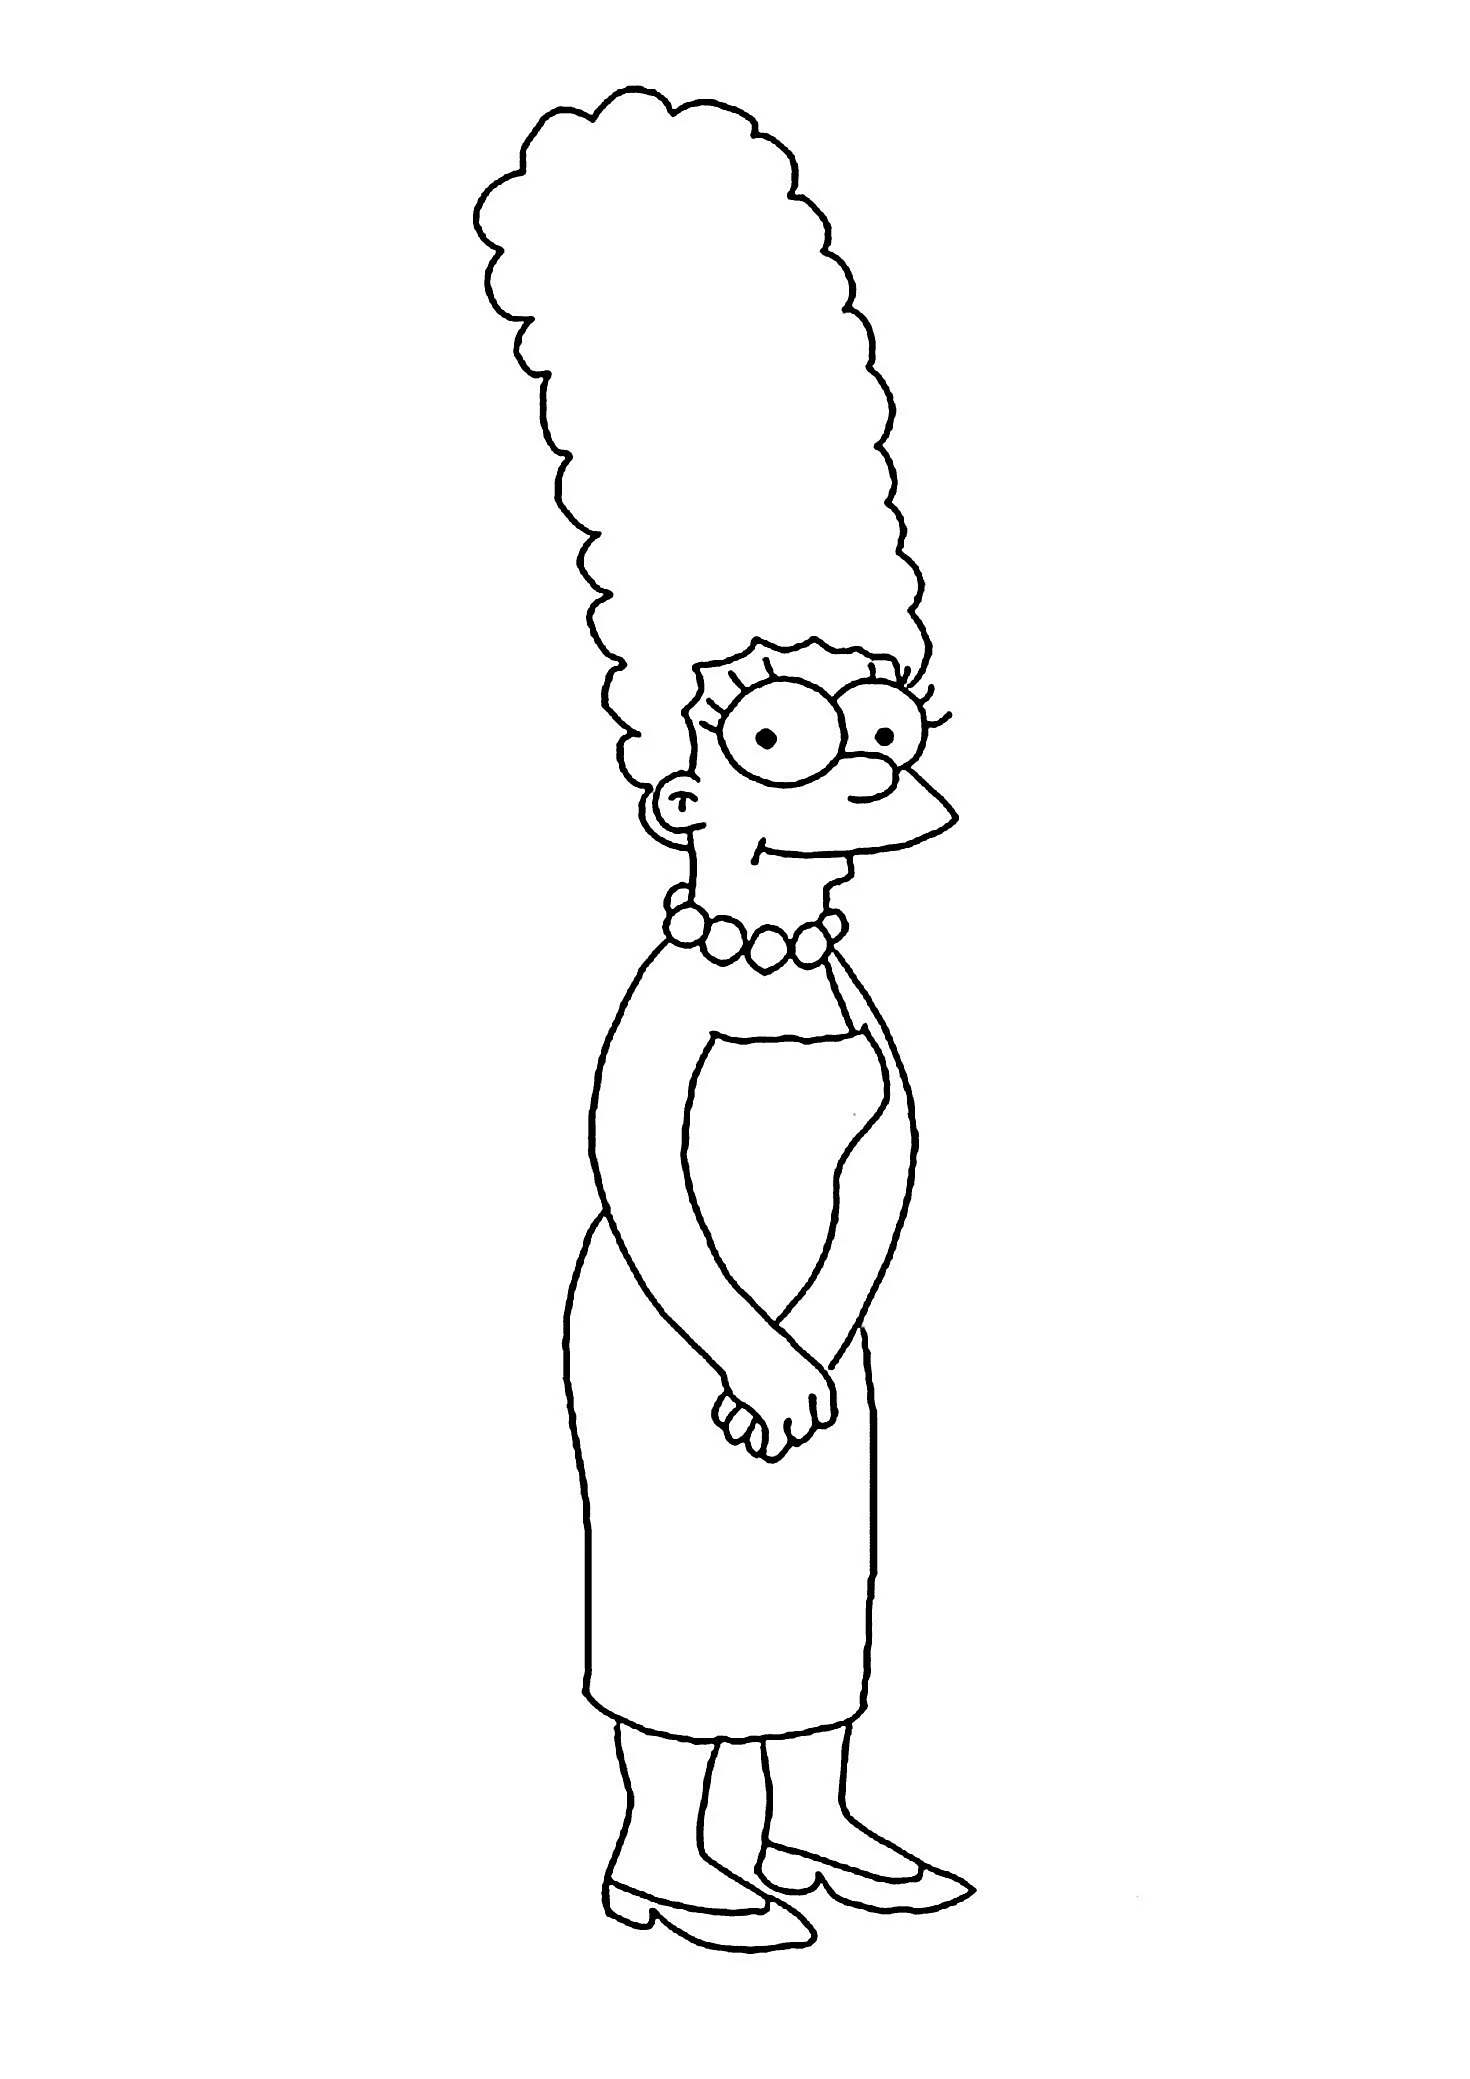 Мардж симпсон